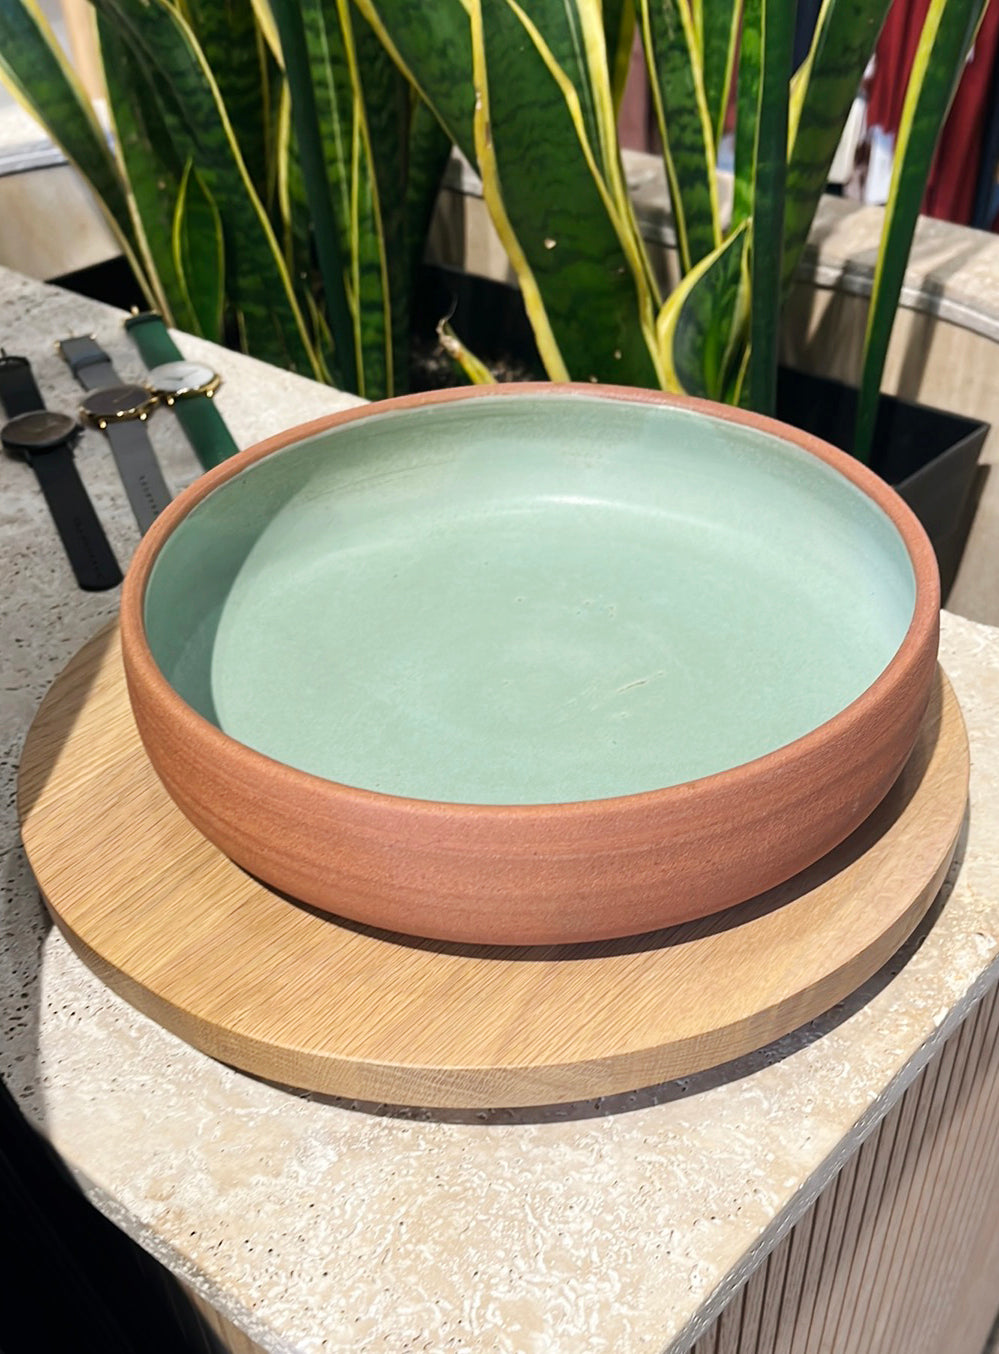 ateliermarienguyen-ceramiste-vaisselle-plateau-plateauseservice-ceramique-vert